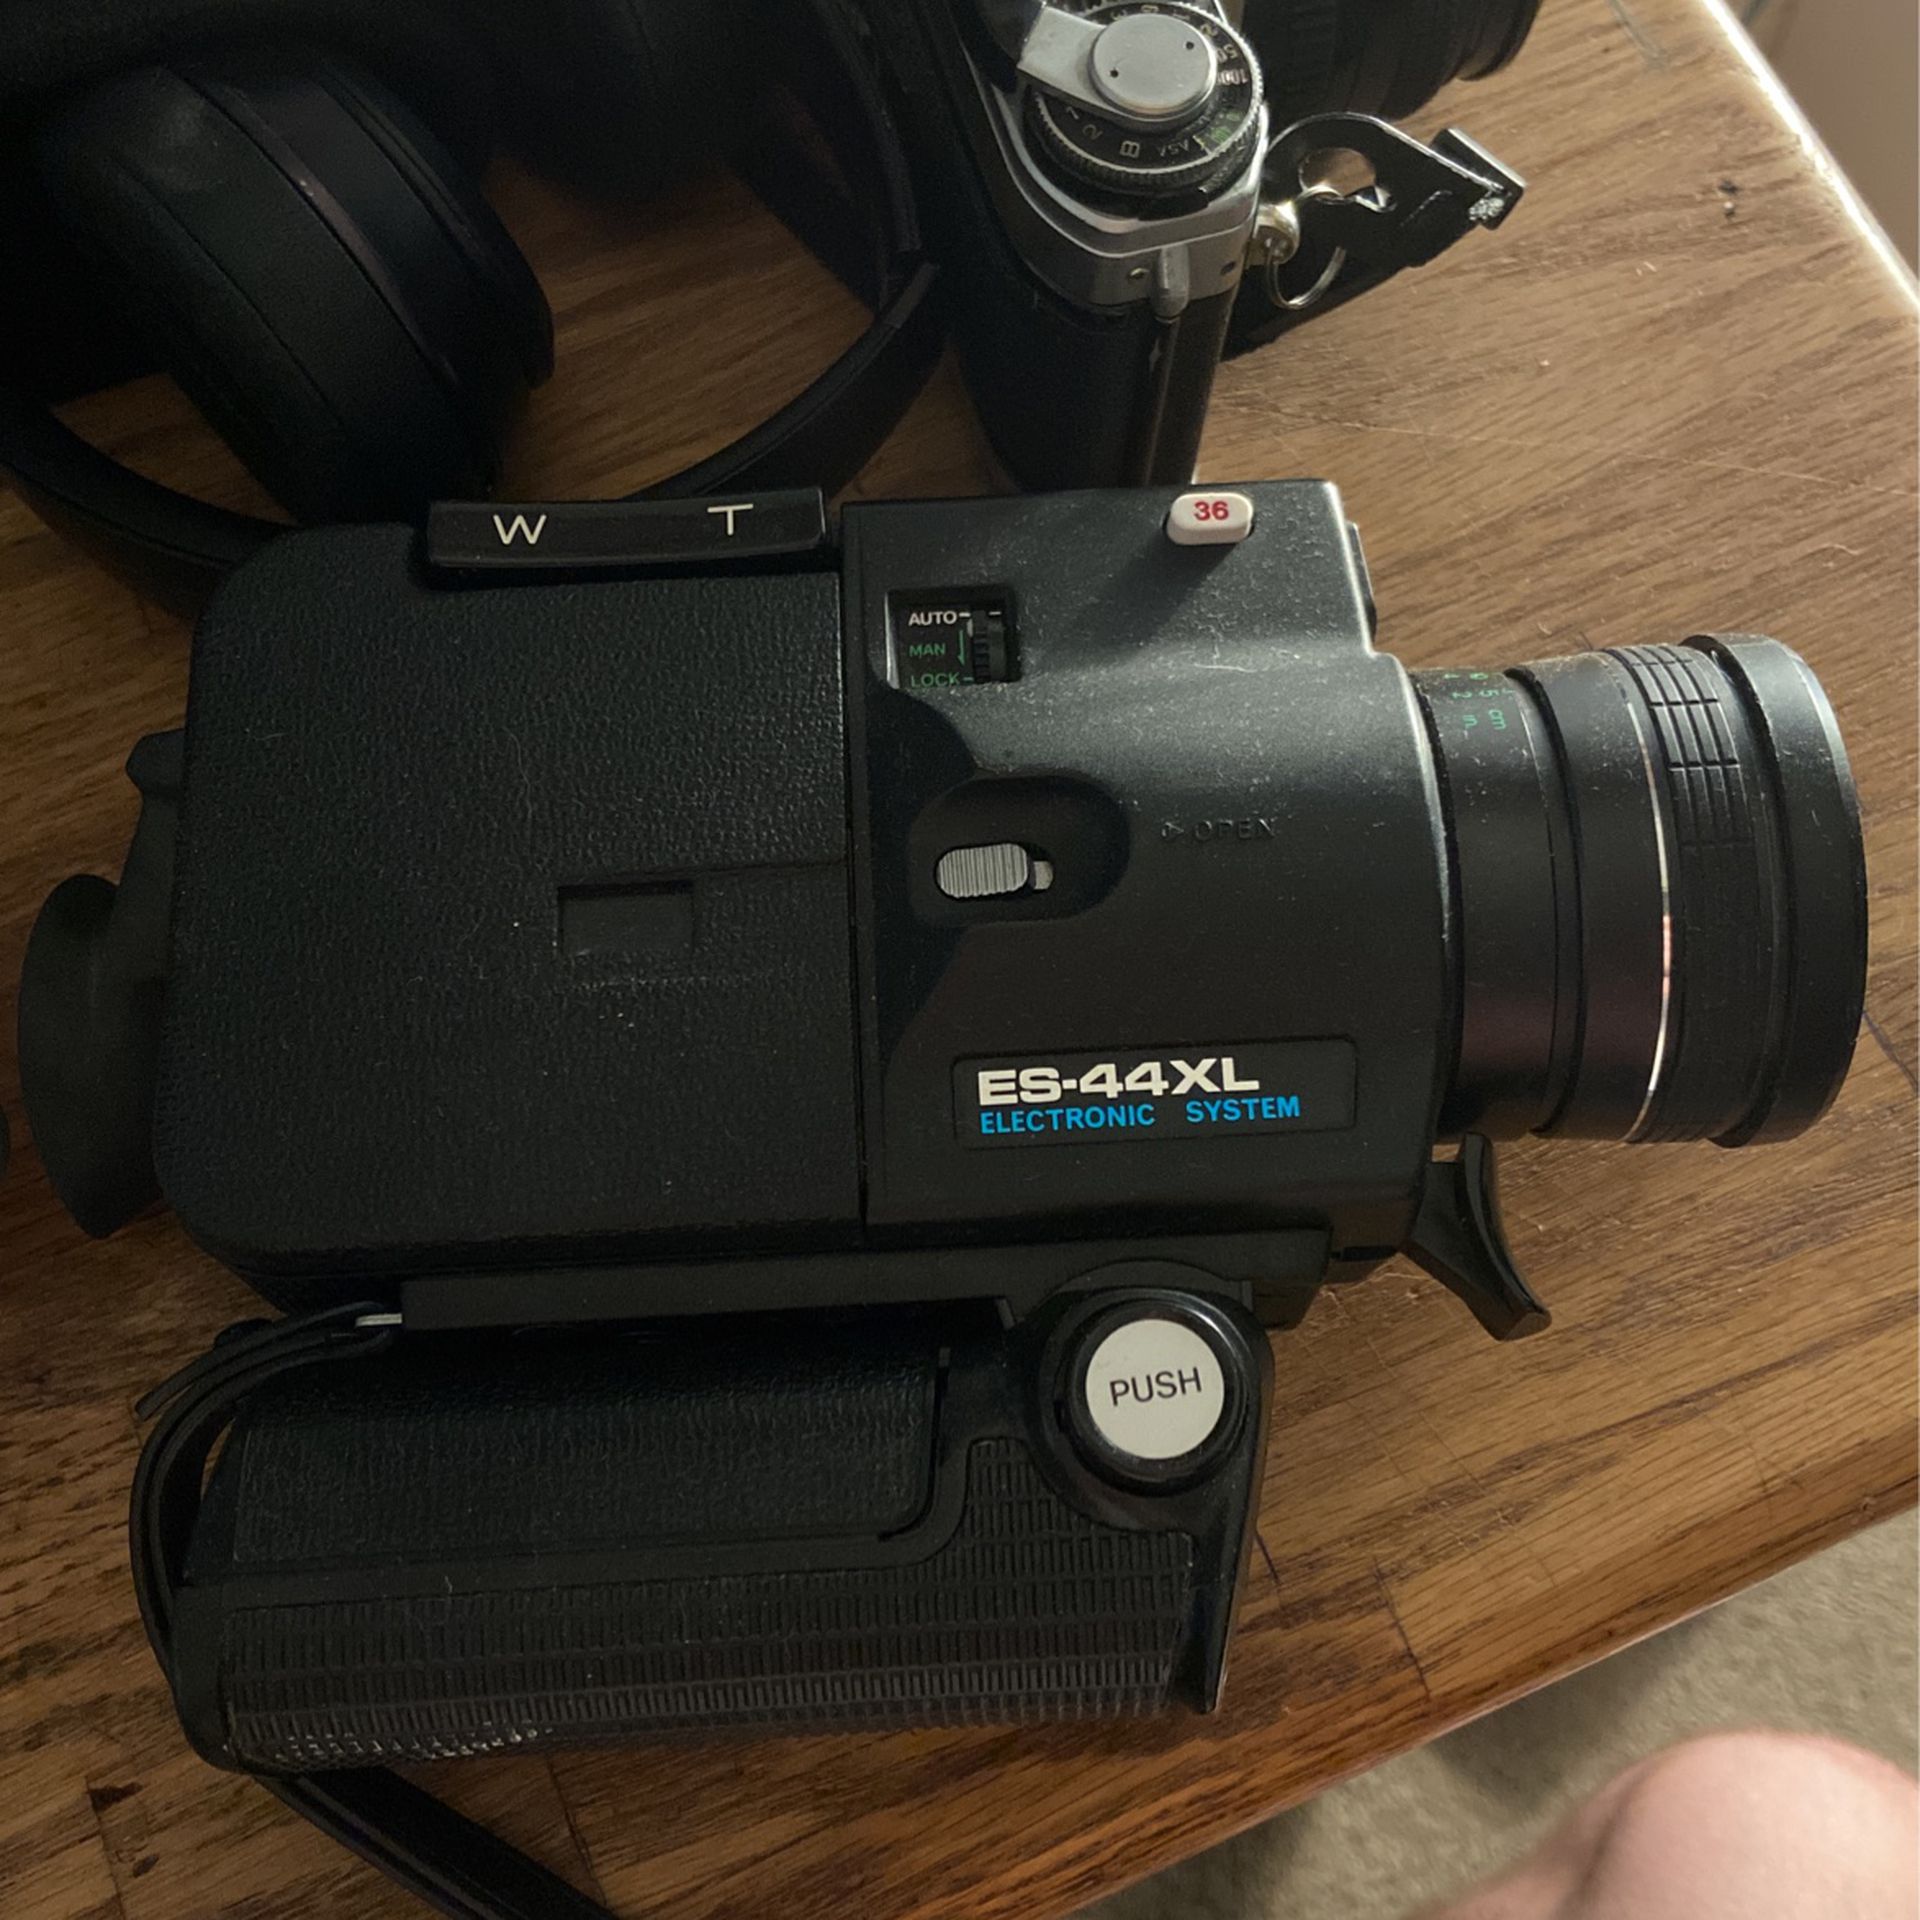 Sankyo Super 8 Camera Comes With Film